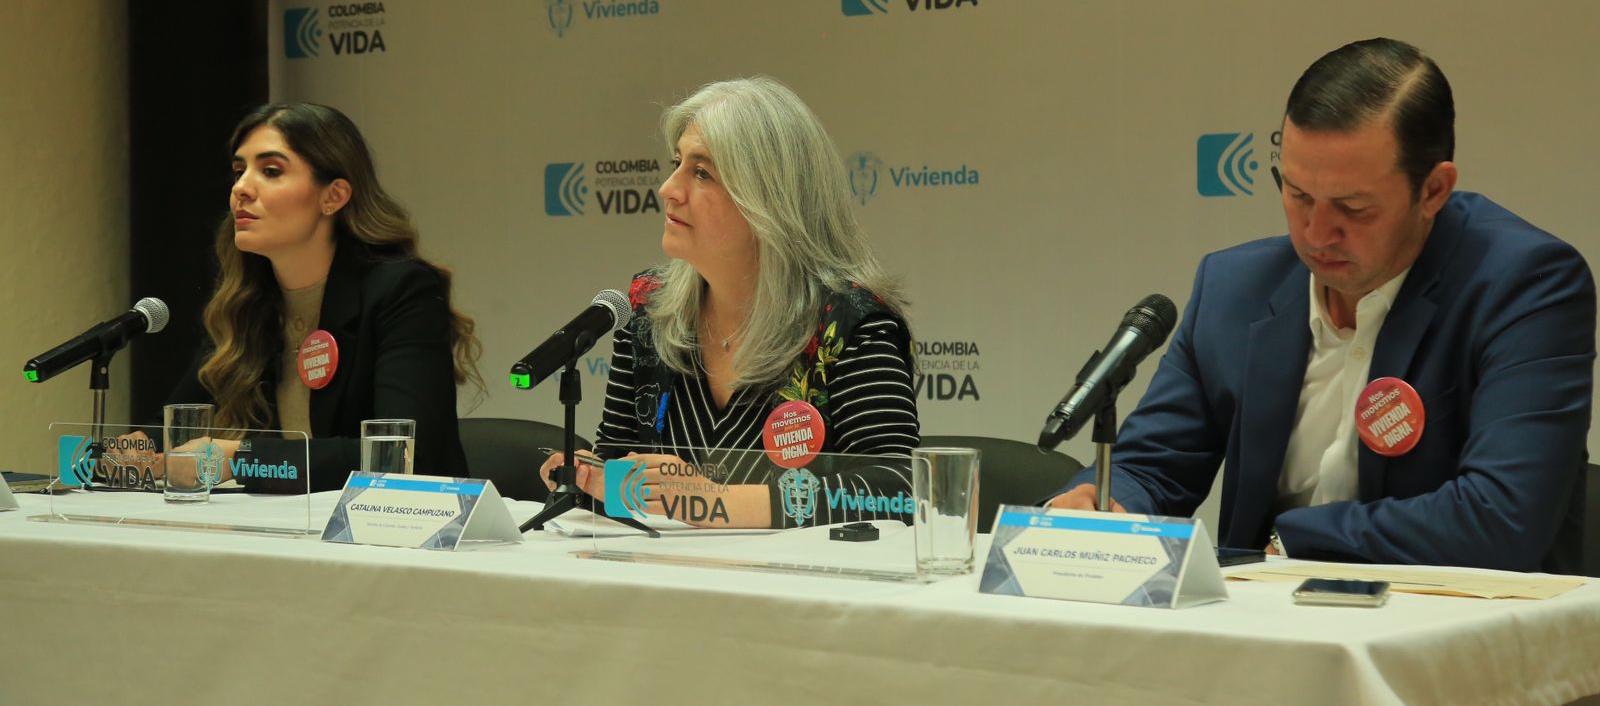  Laura Milena Roa Zeidán, Catalina Velasco Campuzano y Juan Carlos Muñiz Pacheco.